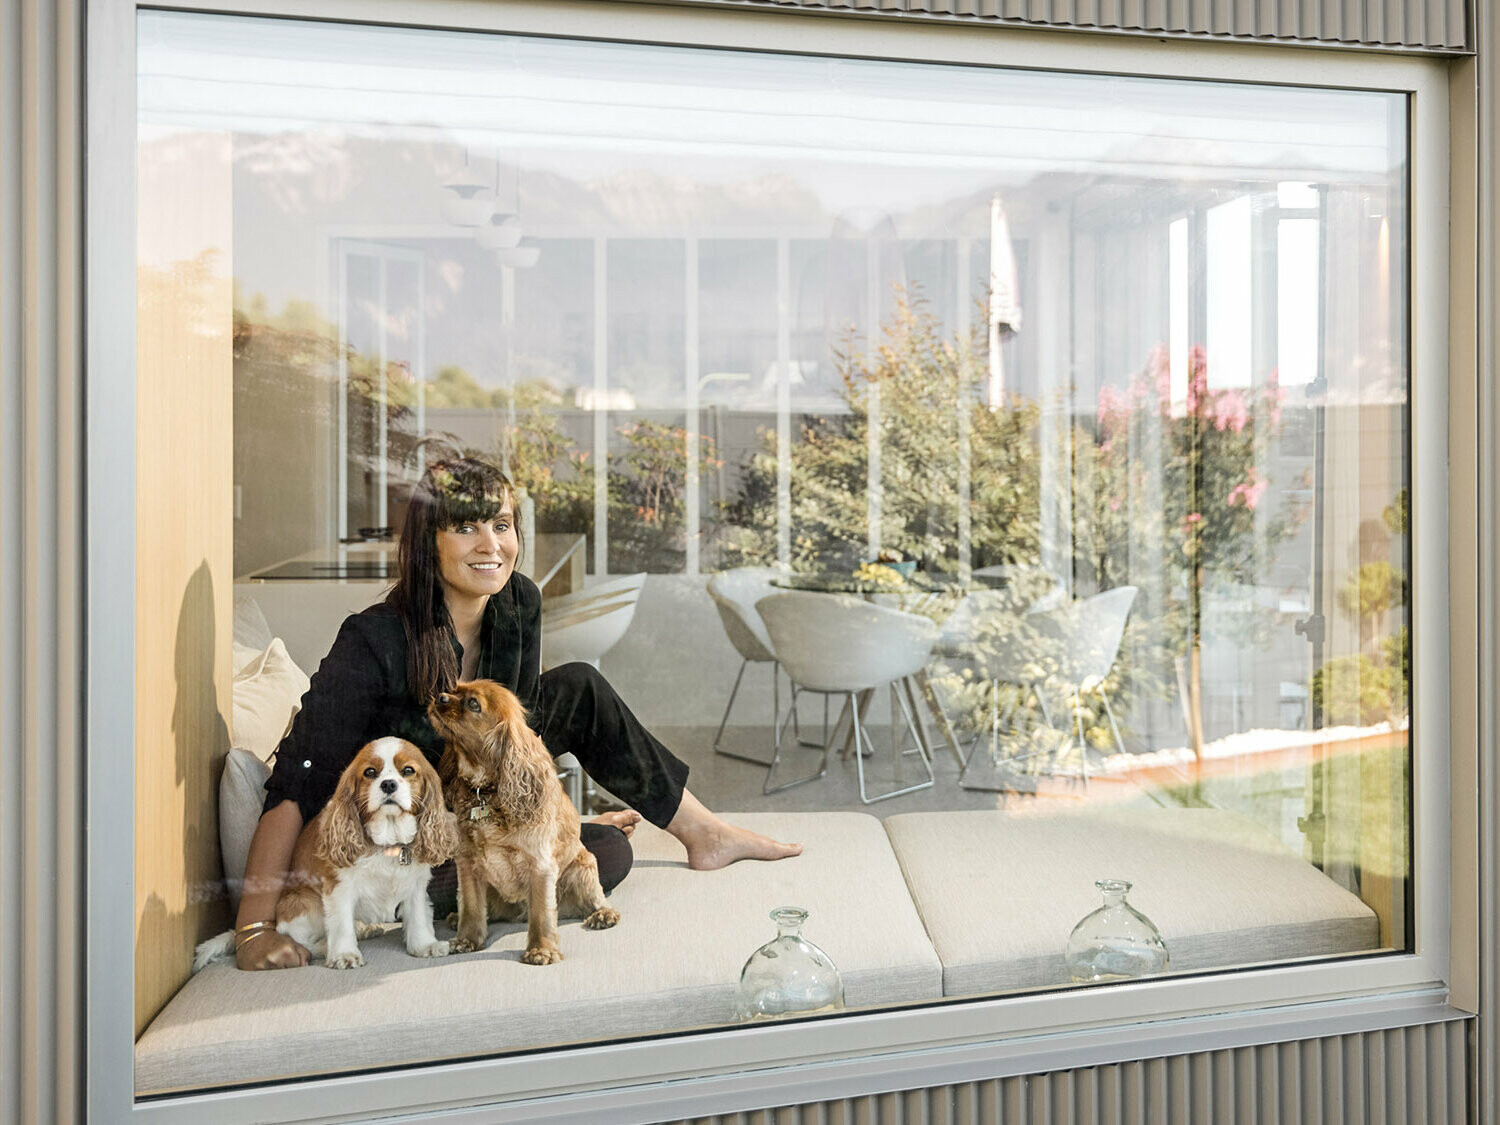 Ritratto fotografico di Sophie Morard seduta con i suoi due cani dietro la finestra nella sua casa sul lago.